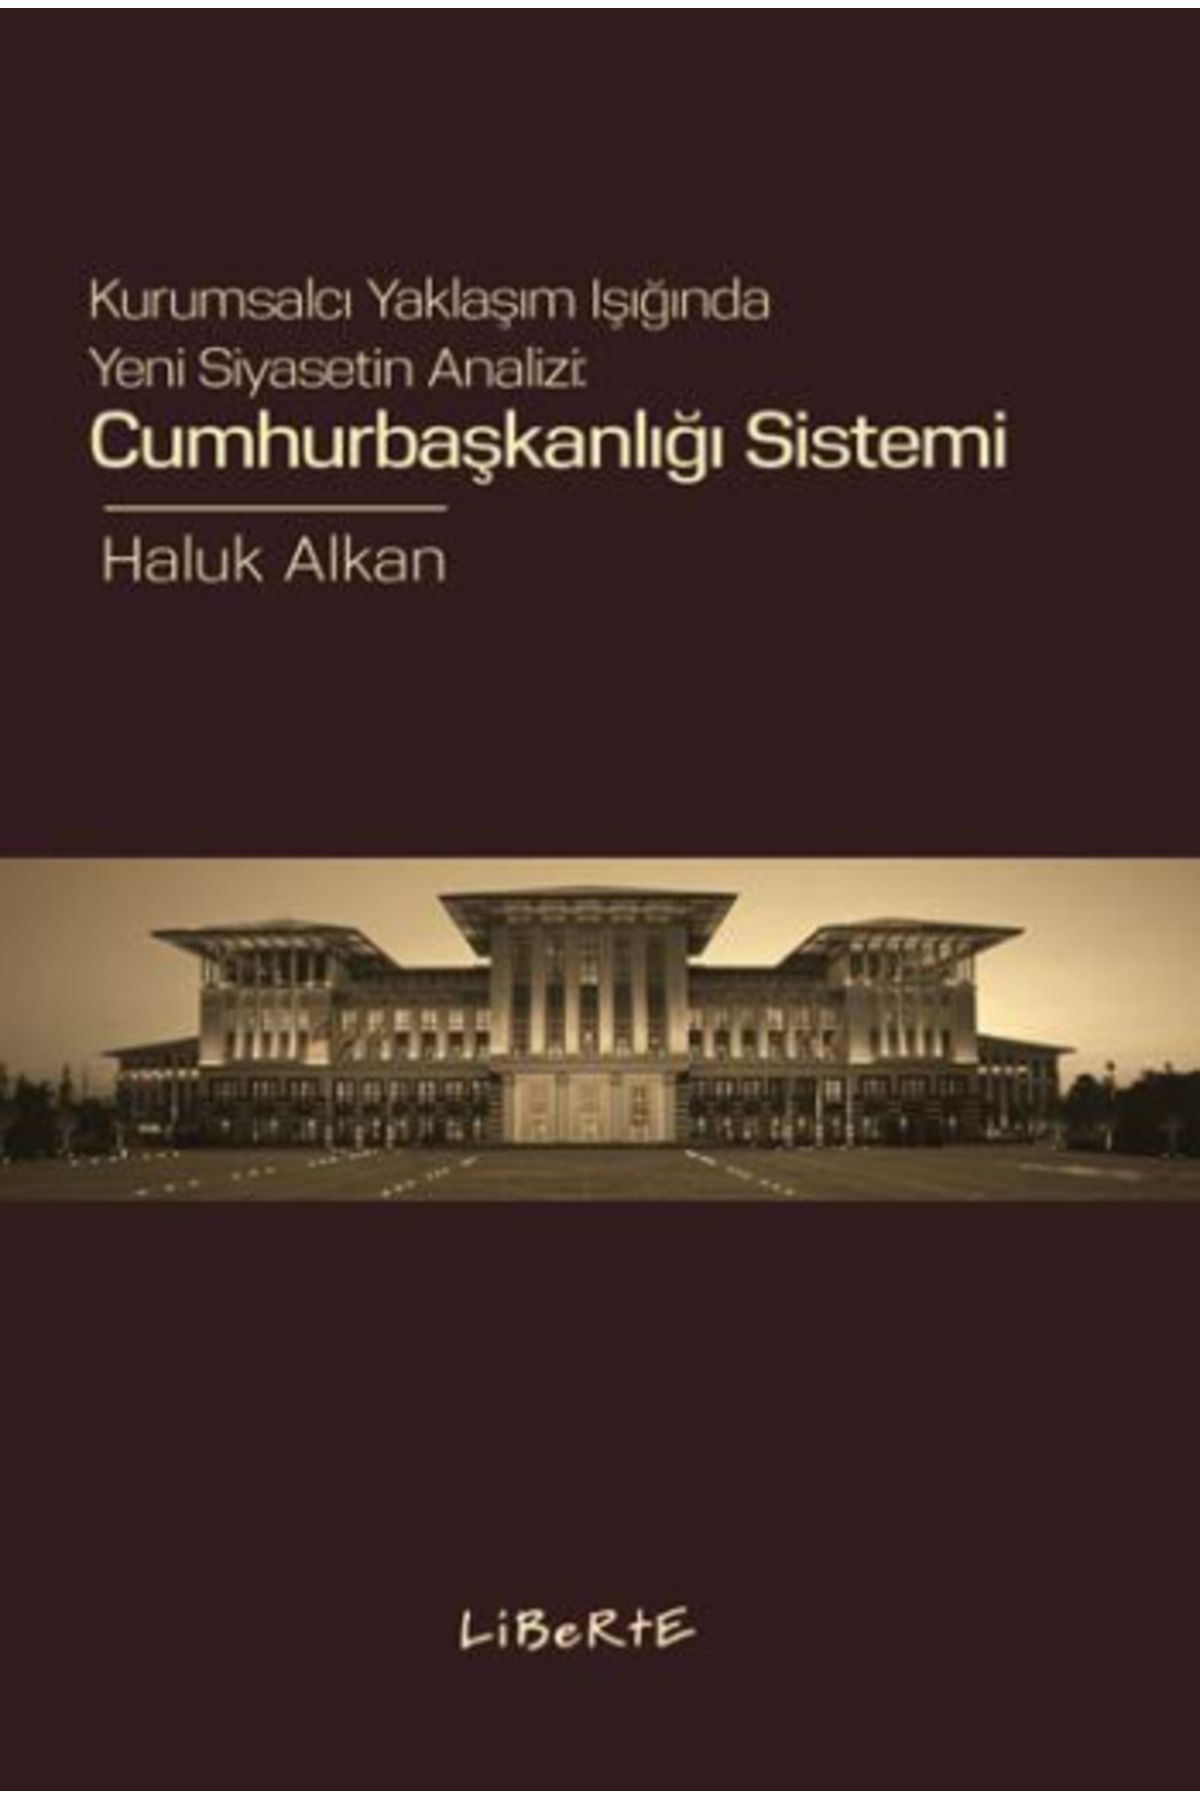 Türkiye İş Bankası Kültür Yayınları Cumhurbaşkanlığı Sistemi Kurumsalcı Yaklaşım Işığında Yeni Siyasetin Analizi